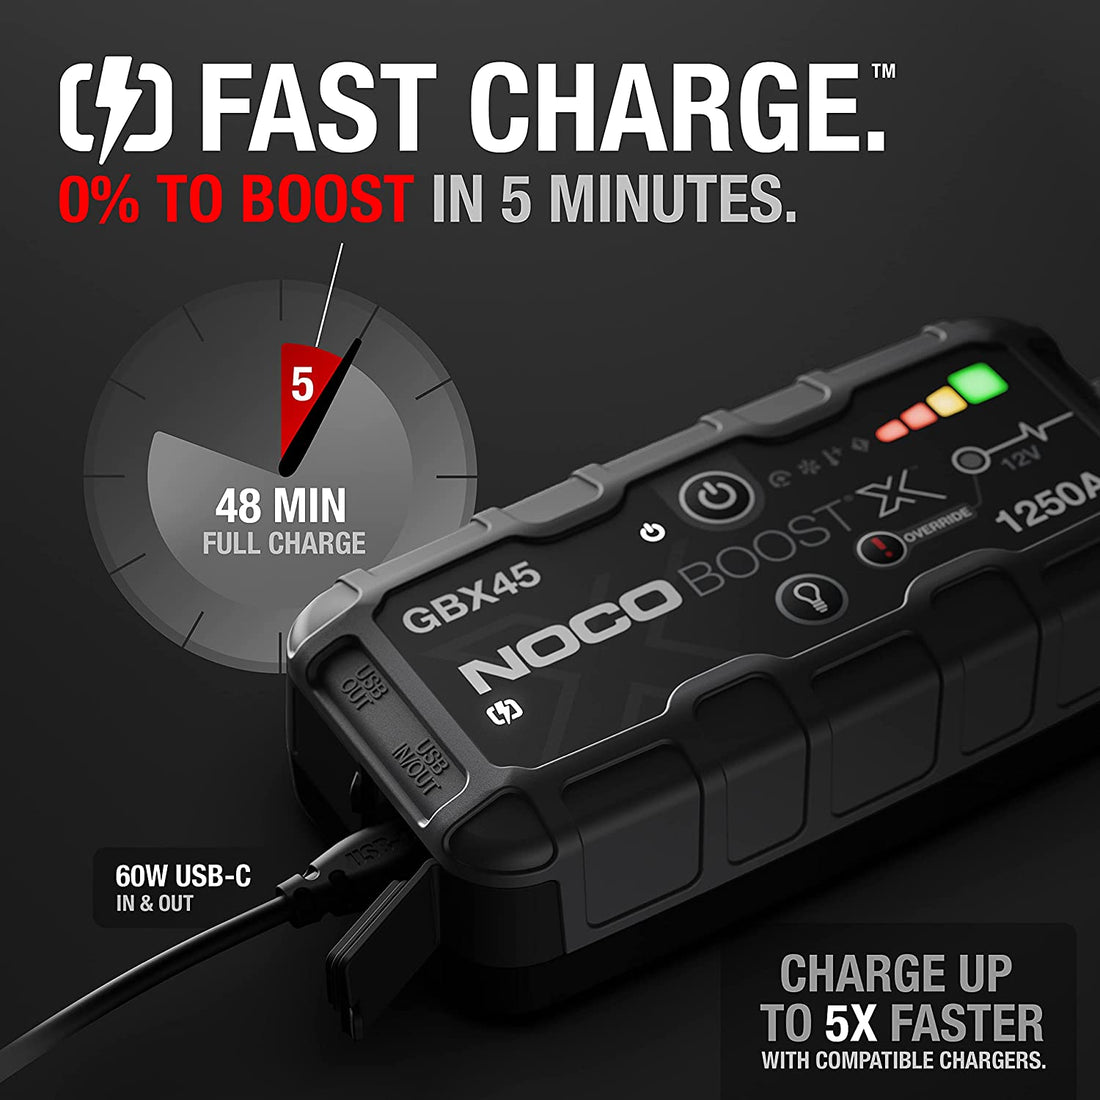 NoCo Boost X GBX55 Partidor Batería Ion Litio 1750A – AutoPro Store